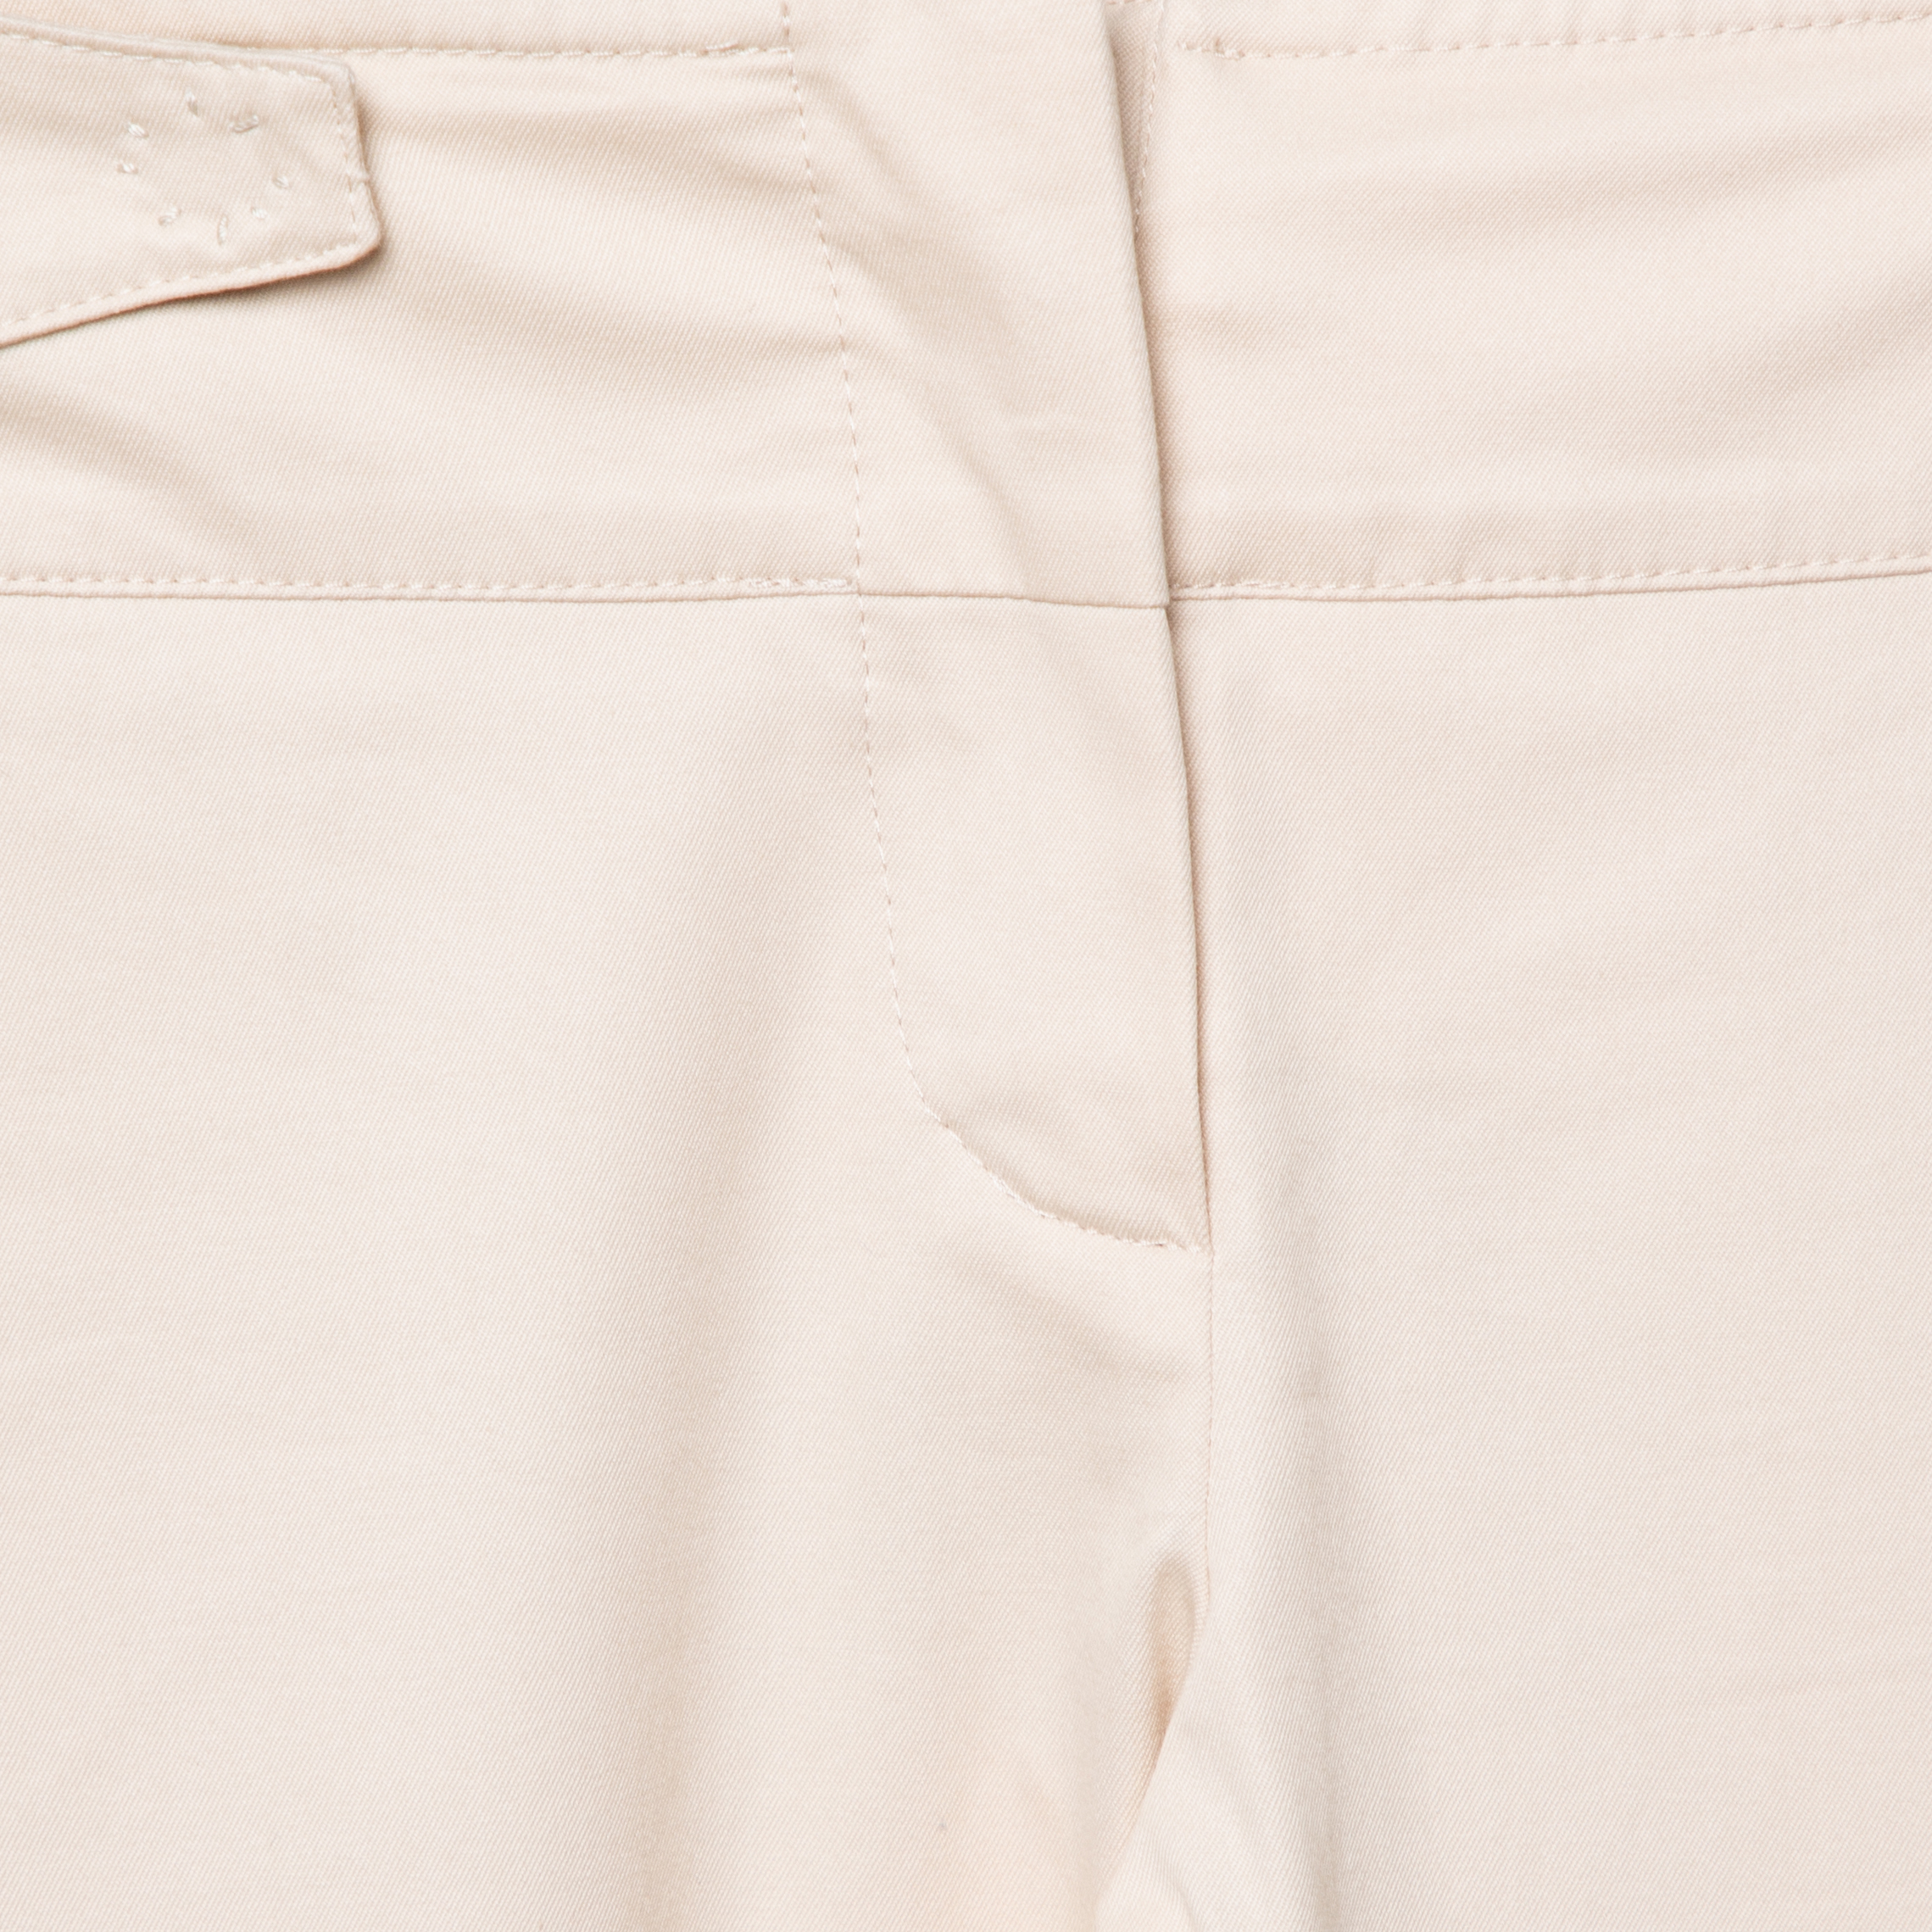 Dior Boutique Beige Cotton Cuffed Hem Pants S